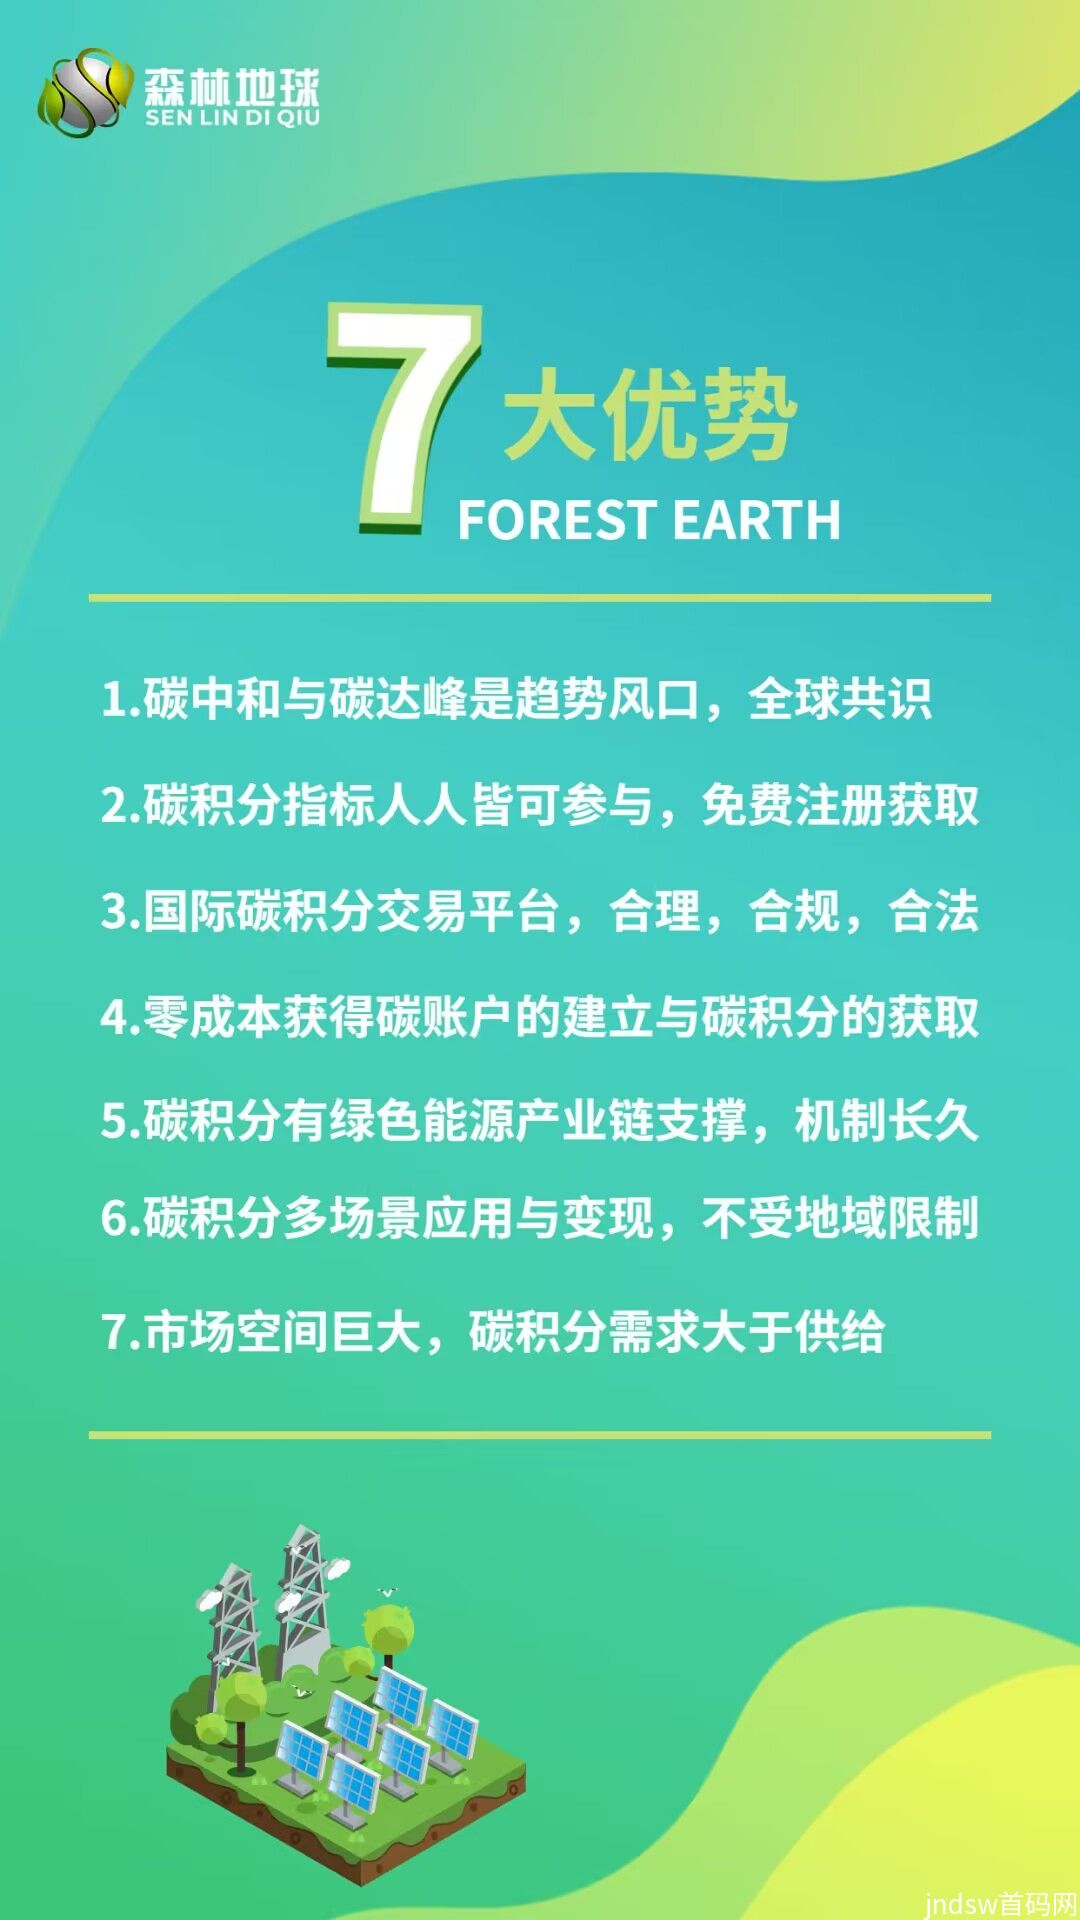 首码预热 森林地球 全新卷轴模式 招募首码市场部_6